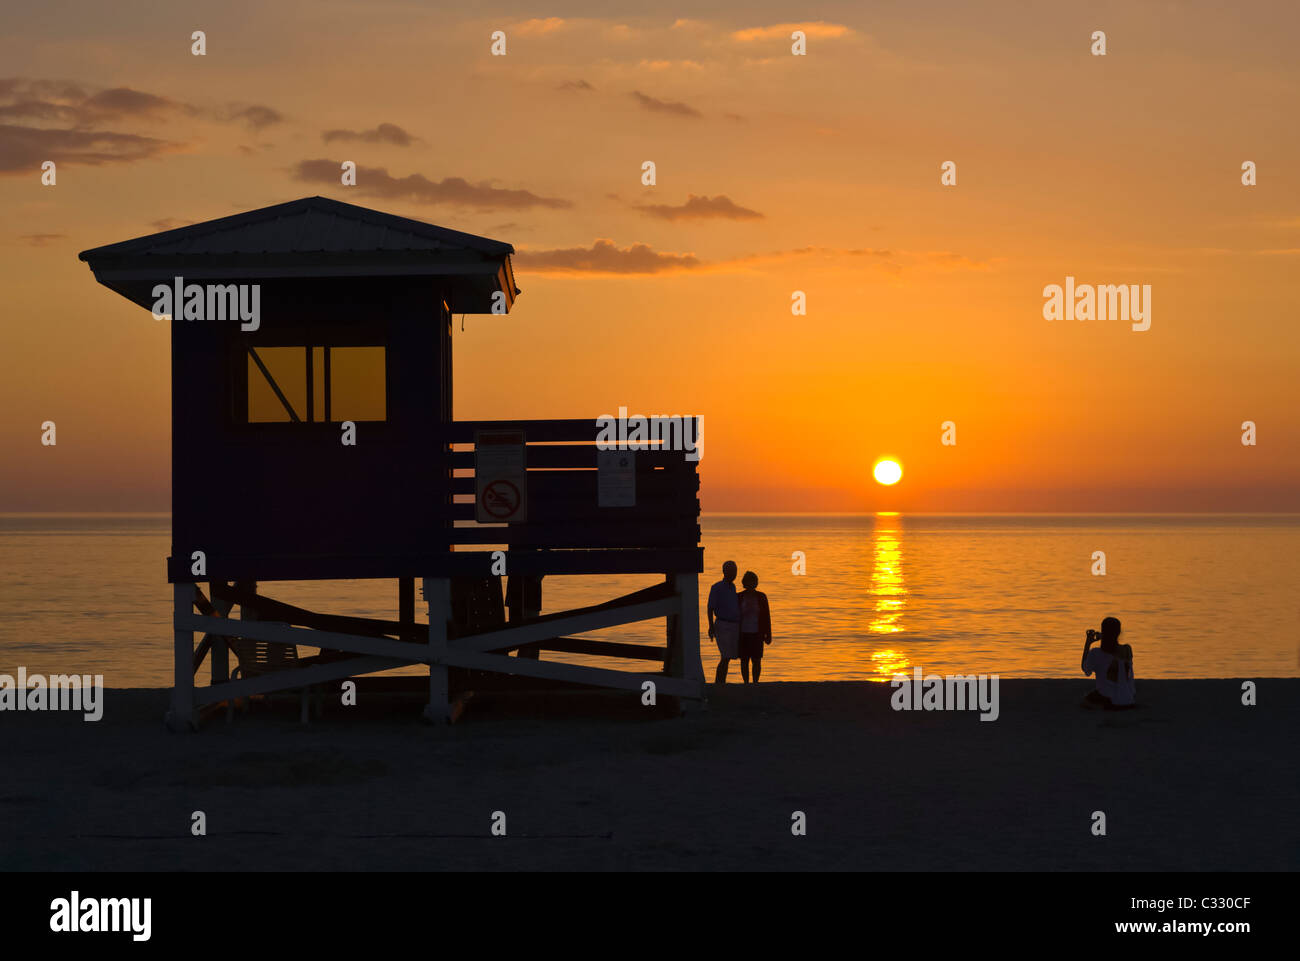 Leben Wache stehen und Menschen Silhouette gegen orange sunset Himmel über Golf von Mexiko aus Venice Beach Florida Stockfoto